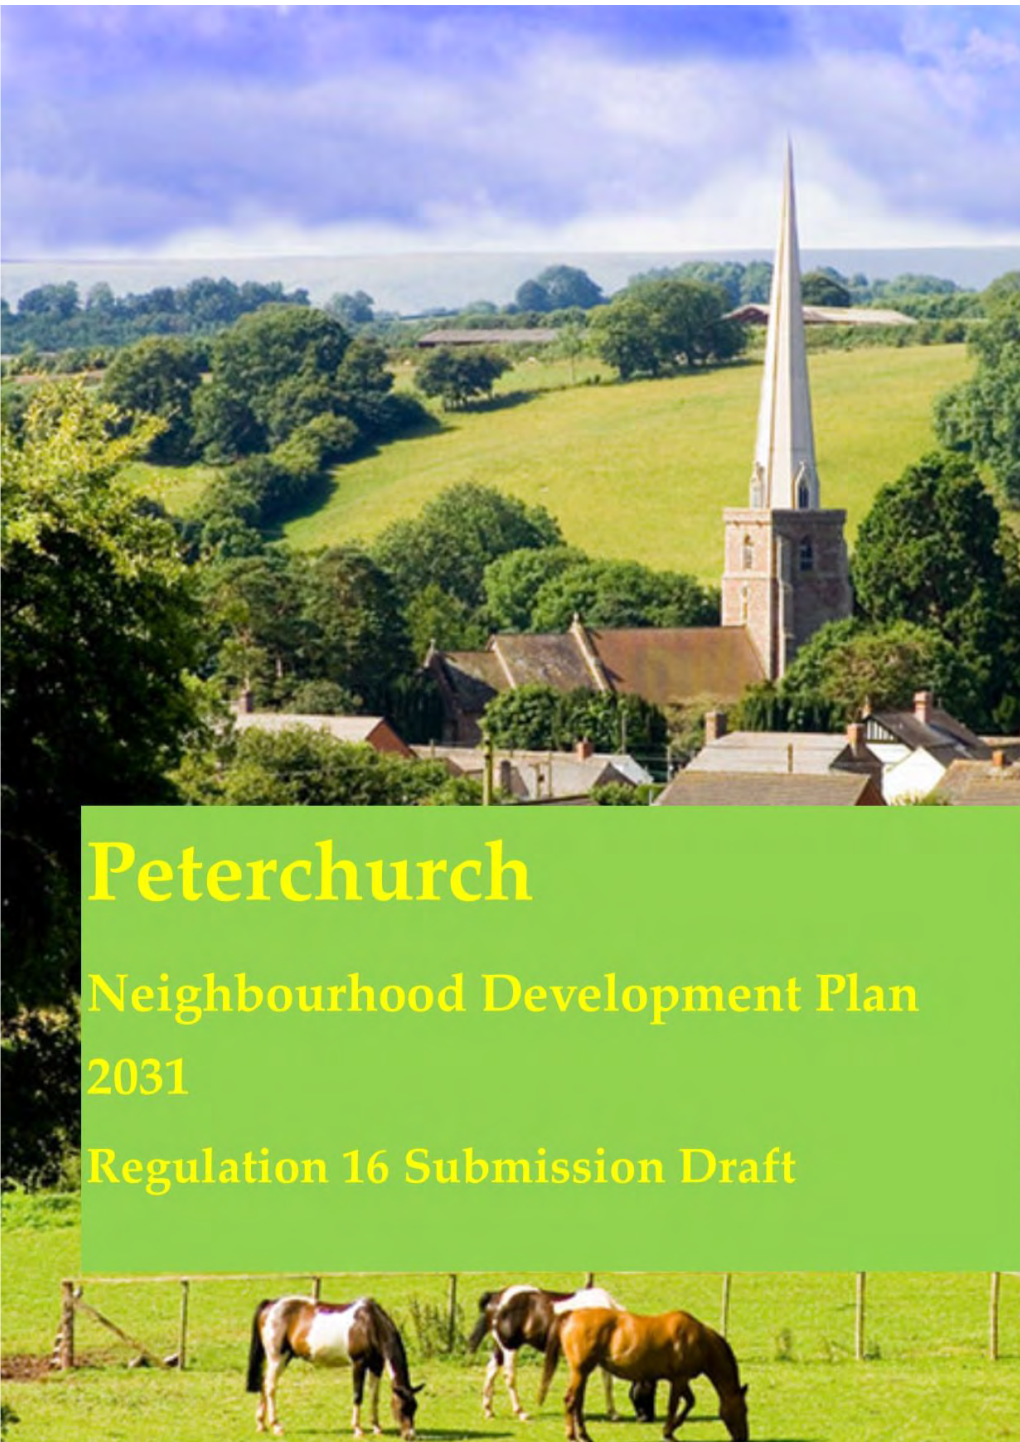 Peterchurch Neighbourhood Development Plan August 2016